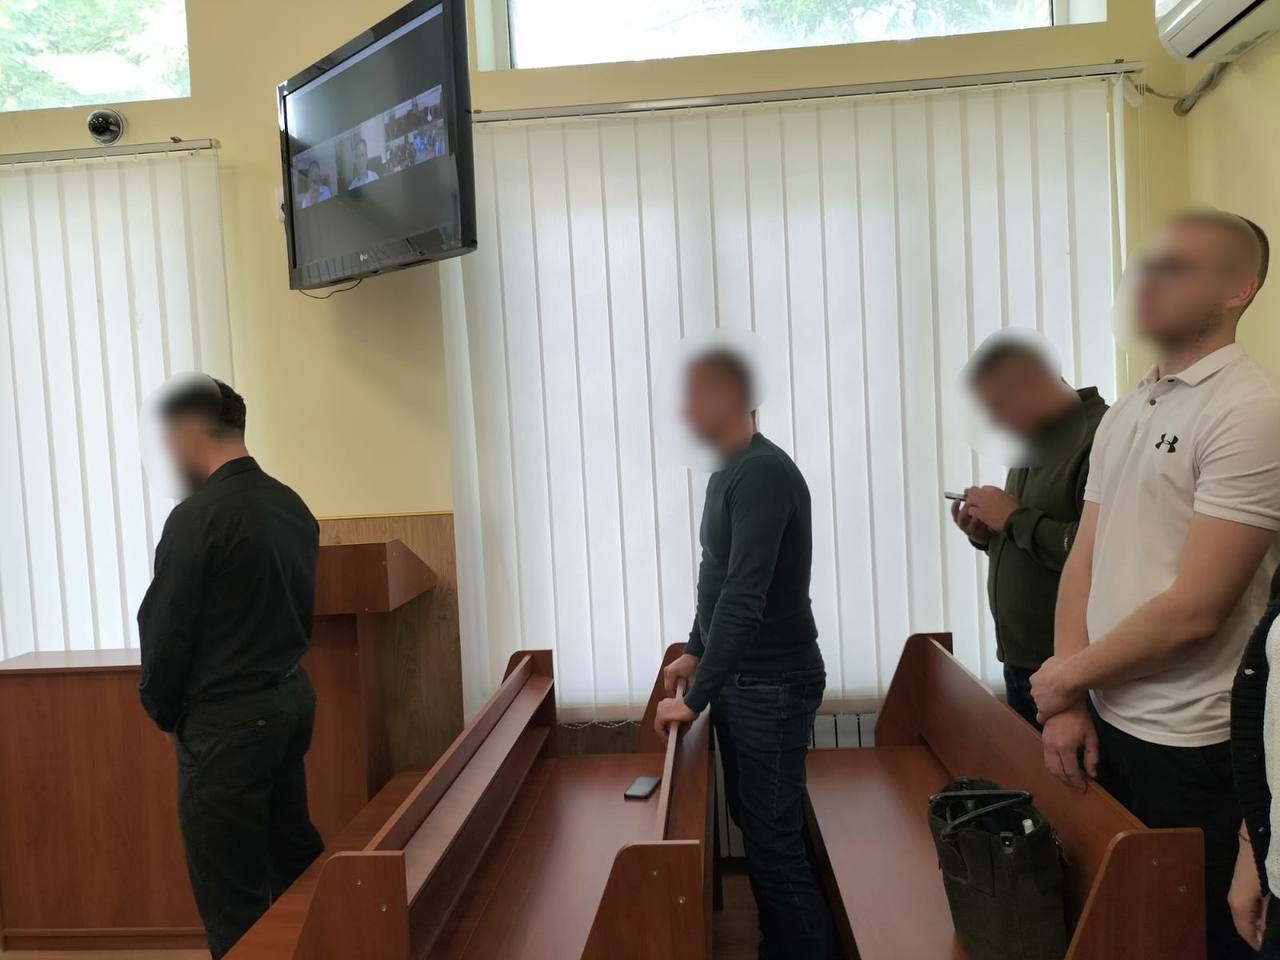 Обвиняемый считает приговор несправедливым. Фото: t.me/pgo_gov_ua/12491